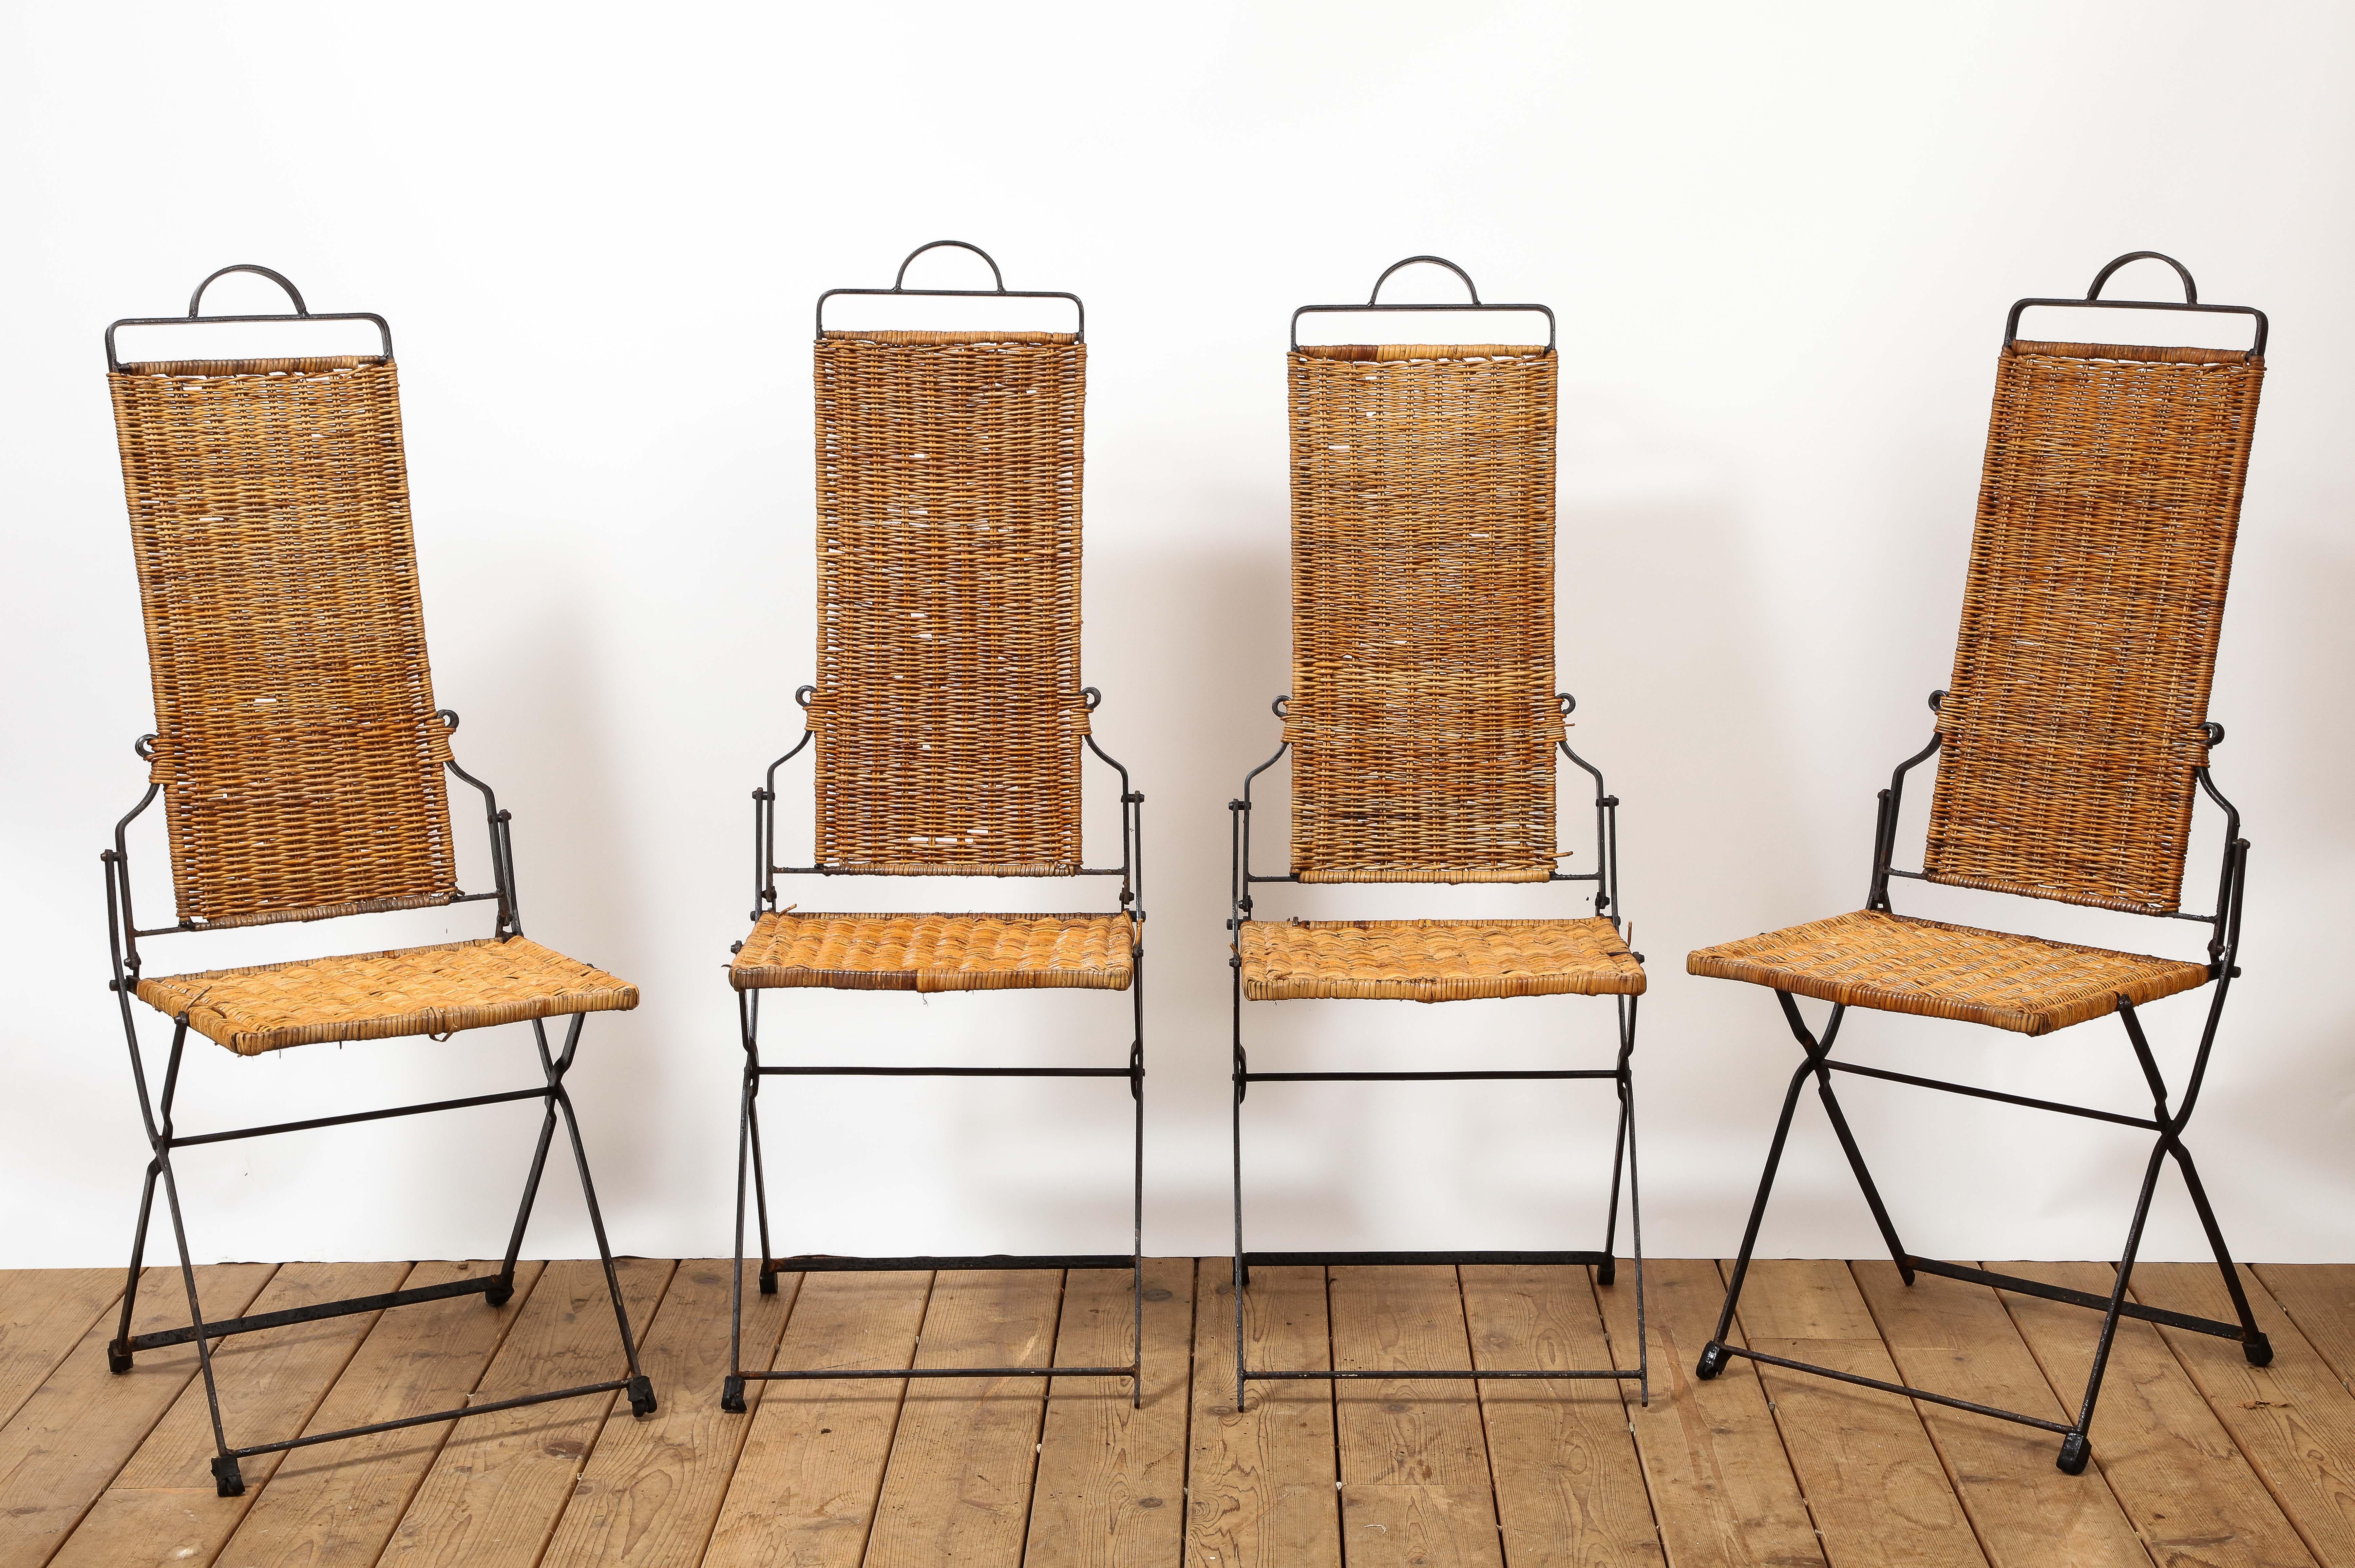 Ensemble de quatre (4) chaises pliantes en osier et en fer de style provincial français du 20e siècle. Profil épuré, poignée de transport arrondie en haut de la chaise. Idéal pour l'extérieur. 